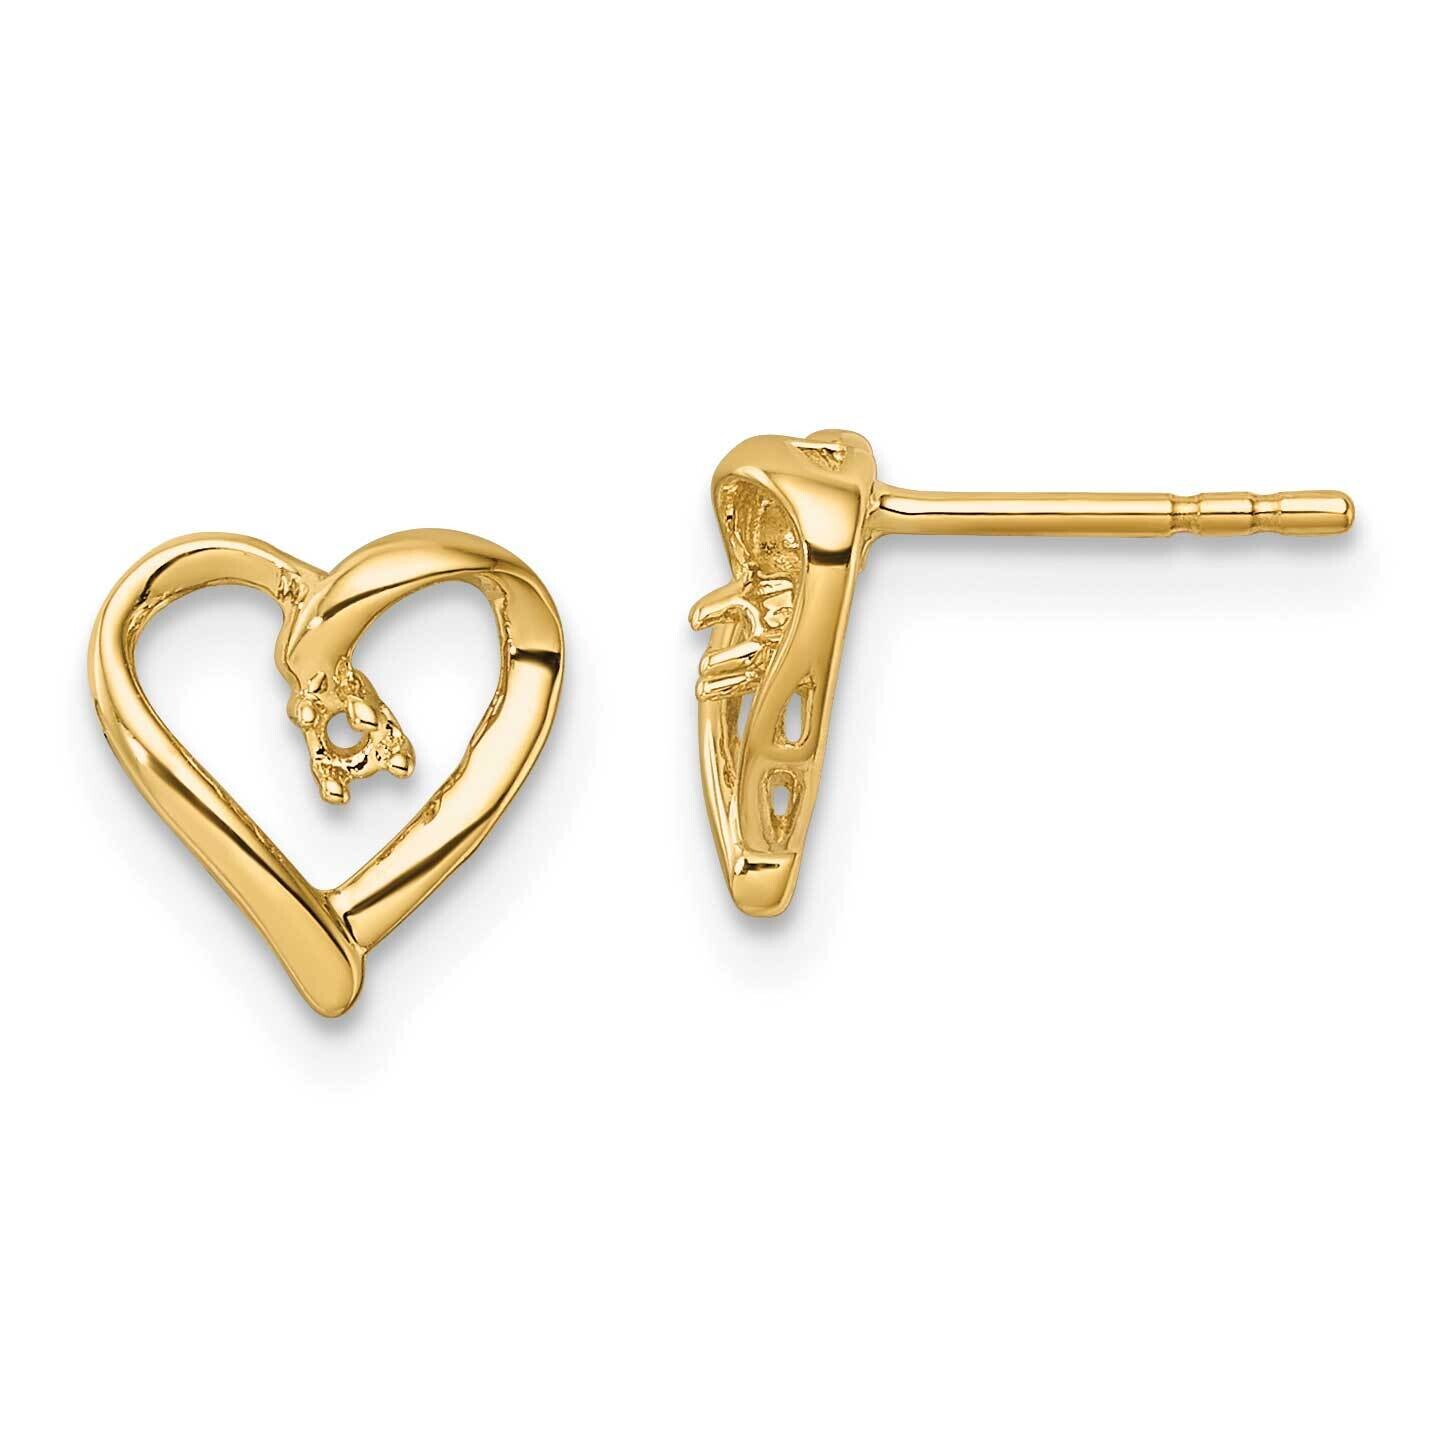 Fancy Diamond Heart Earring Mountings 14k Gold EM5522-005-Y